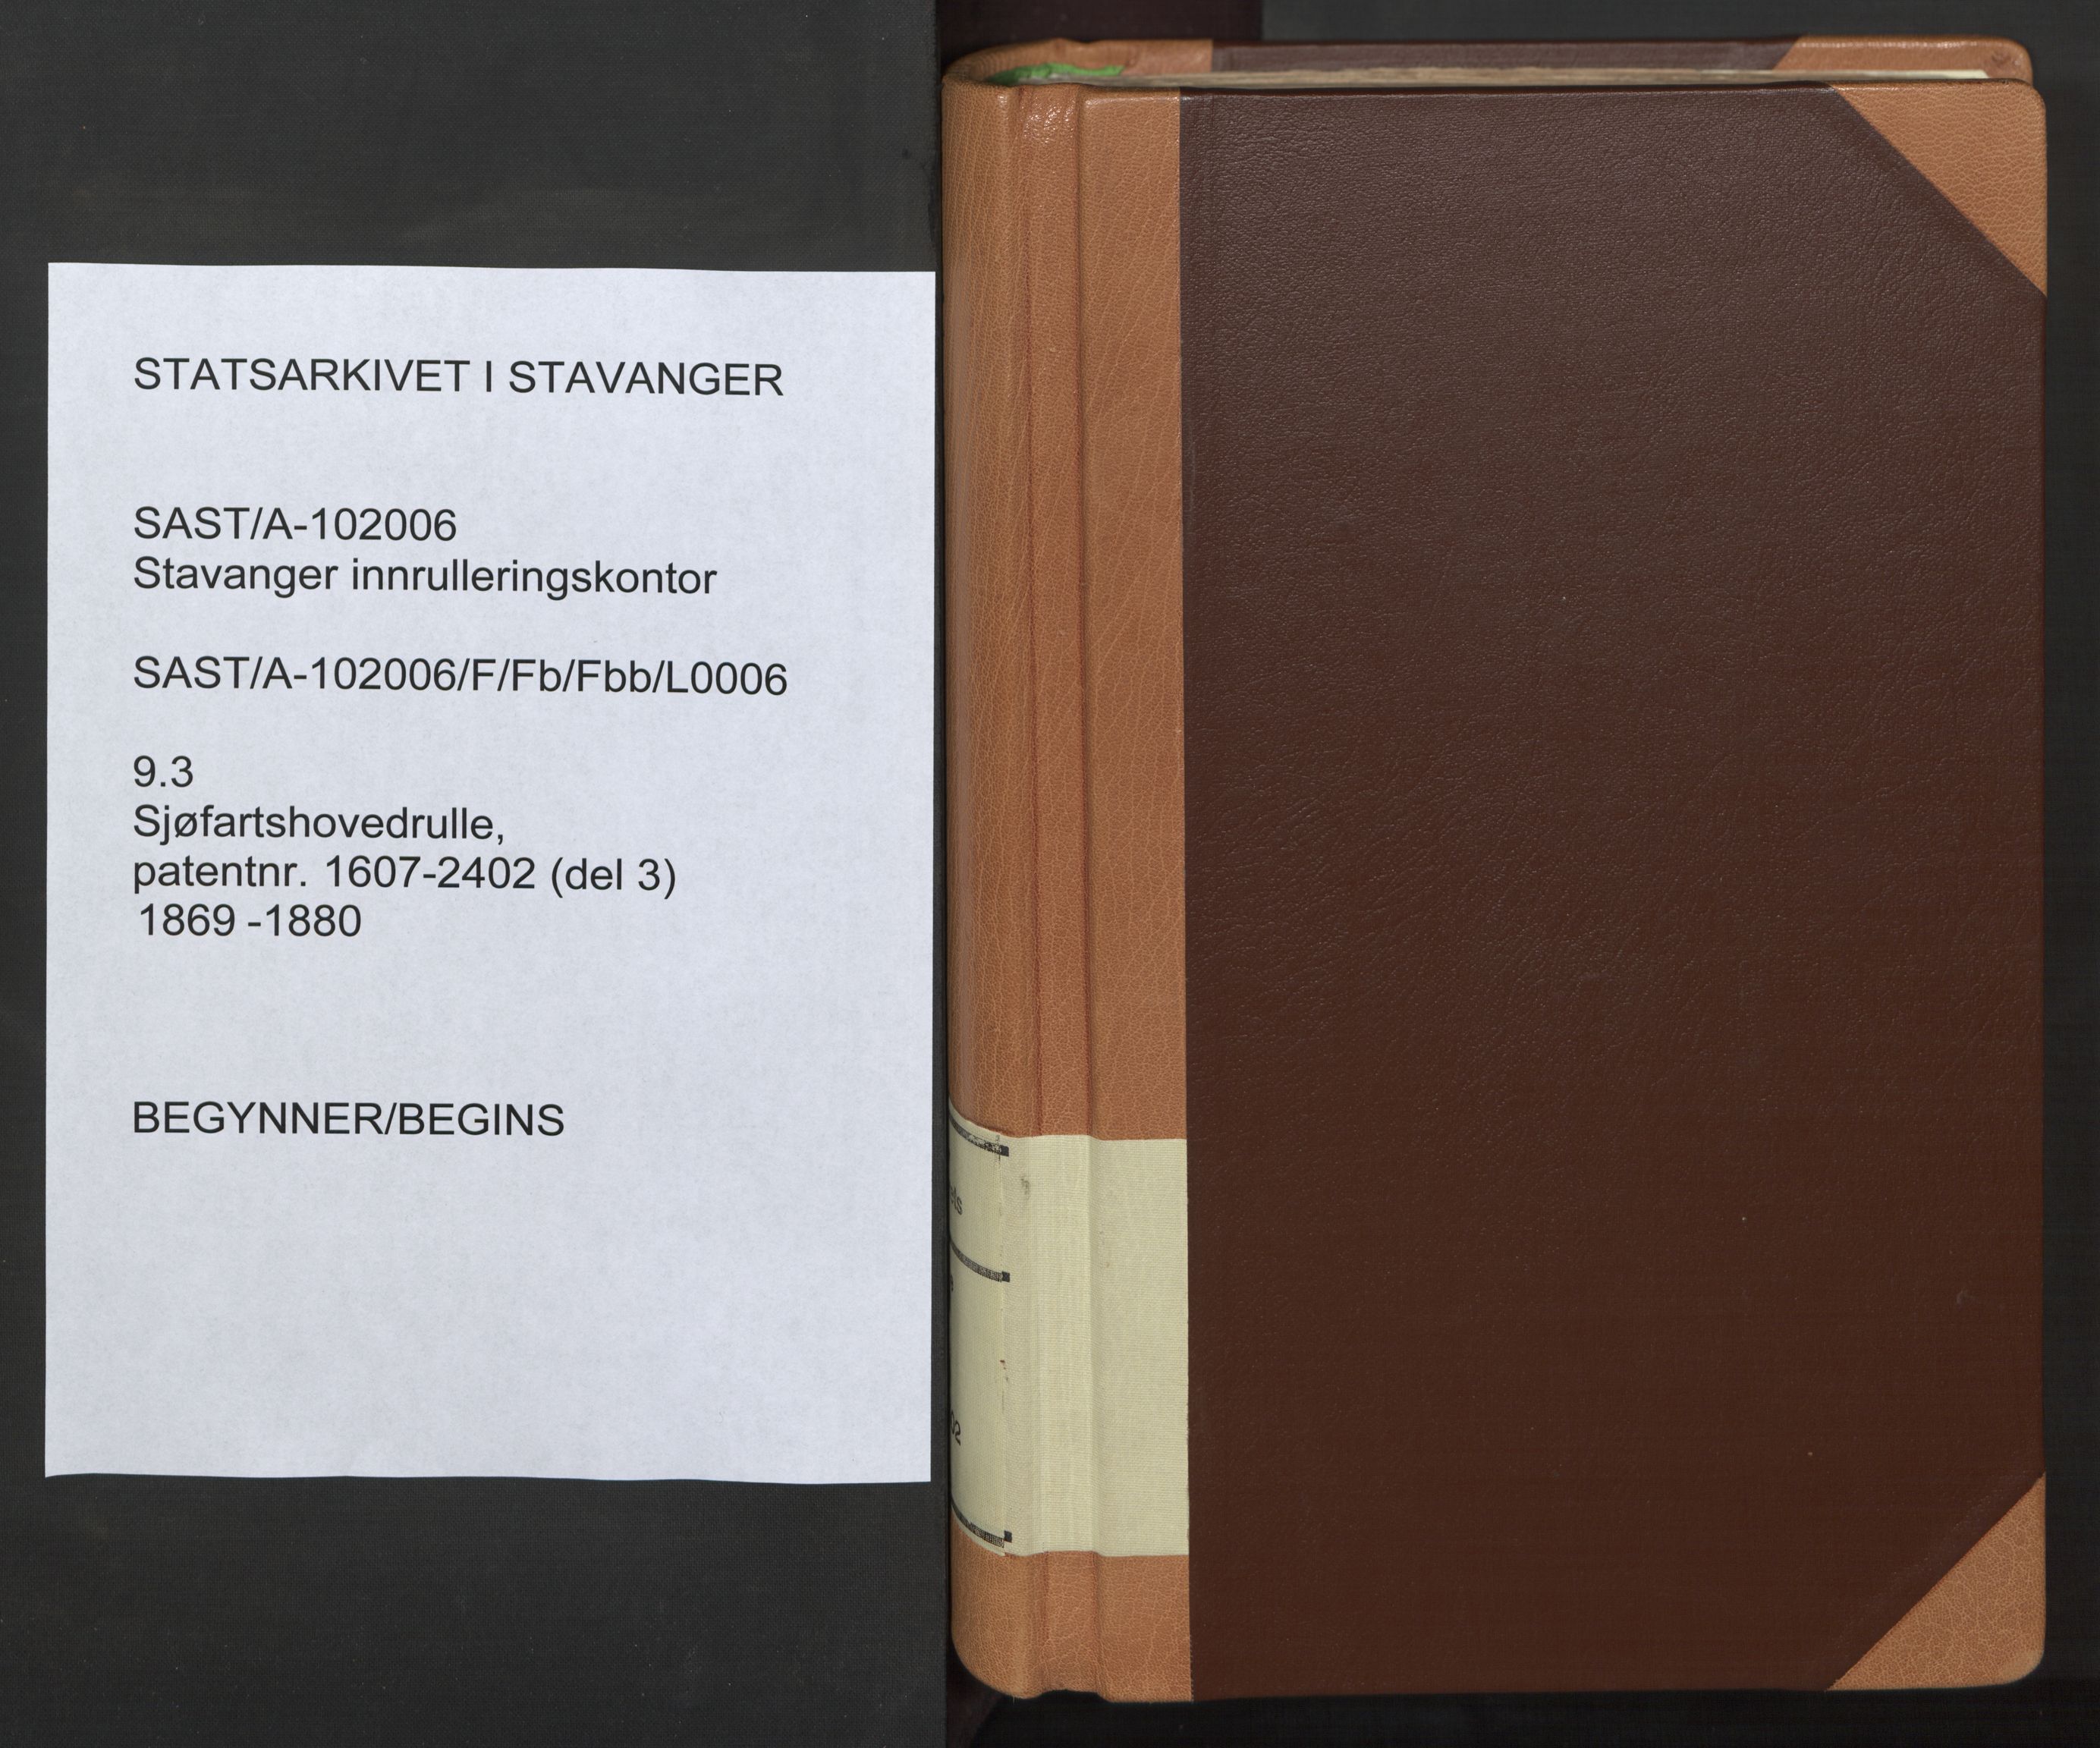 Stavanger sjømannskontor, SAST/A-102006/F/Fb/Fbb/L0006: Sjøfartshovedrulle, patentnr. 1607-2402 (del 3), 1869-1880, s. 1